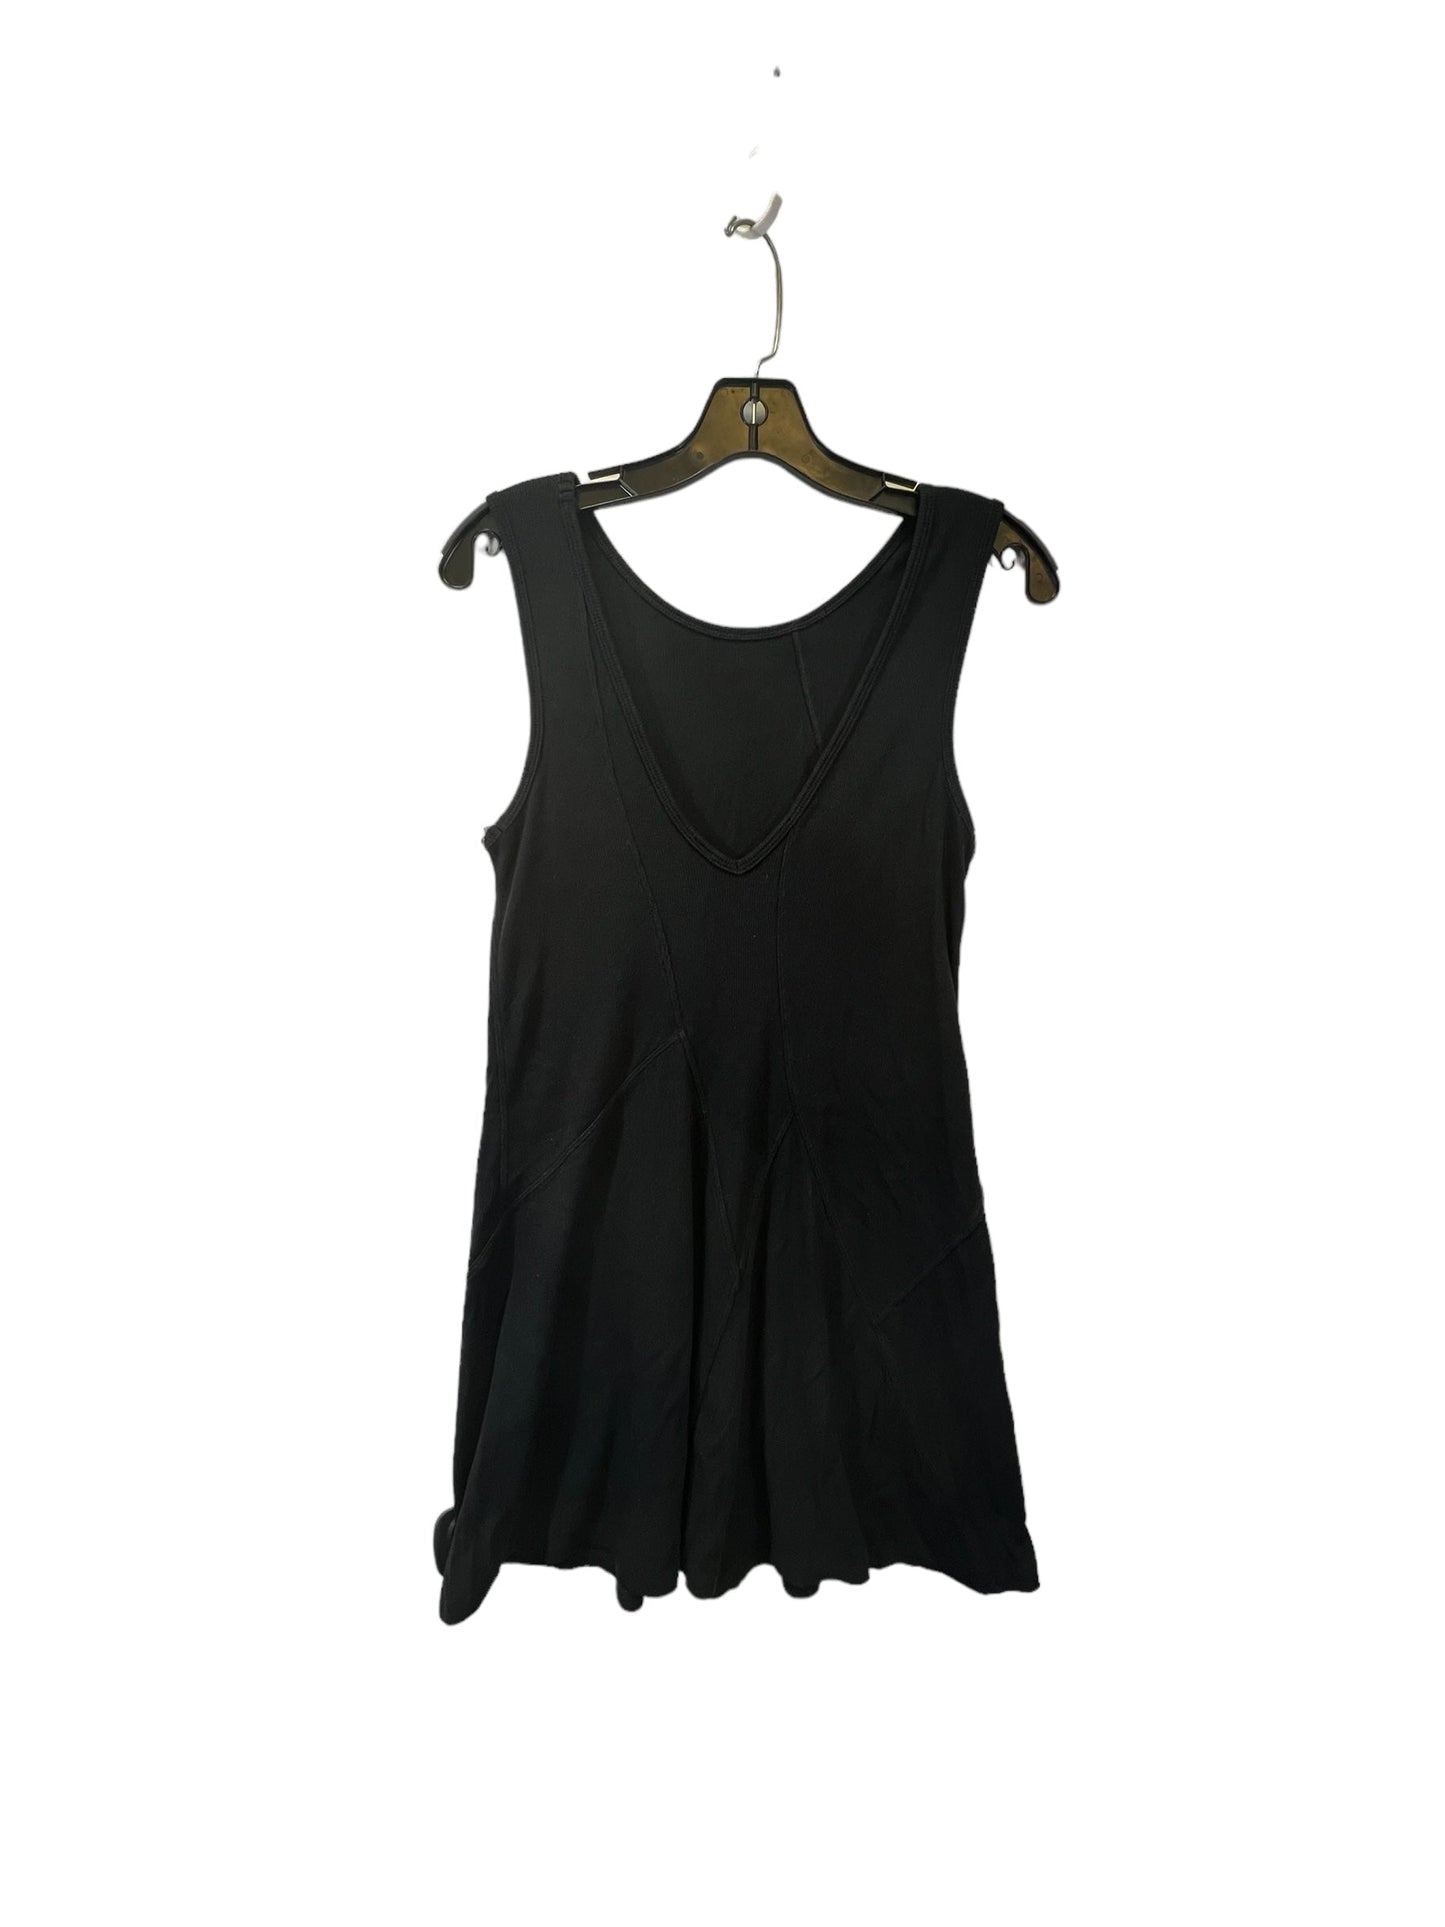 Black Athletic Dress Lululemon, Size 2